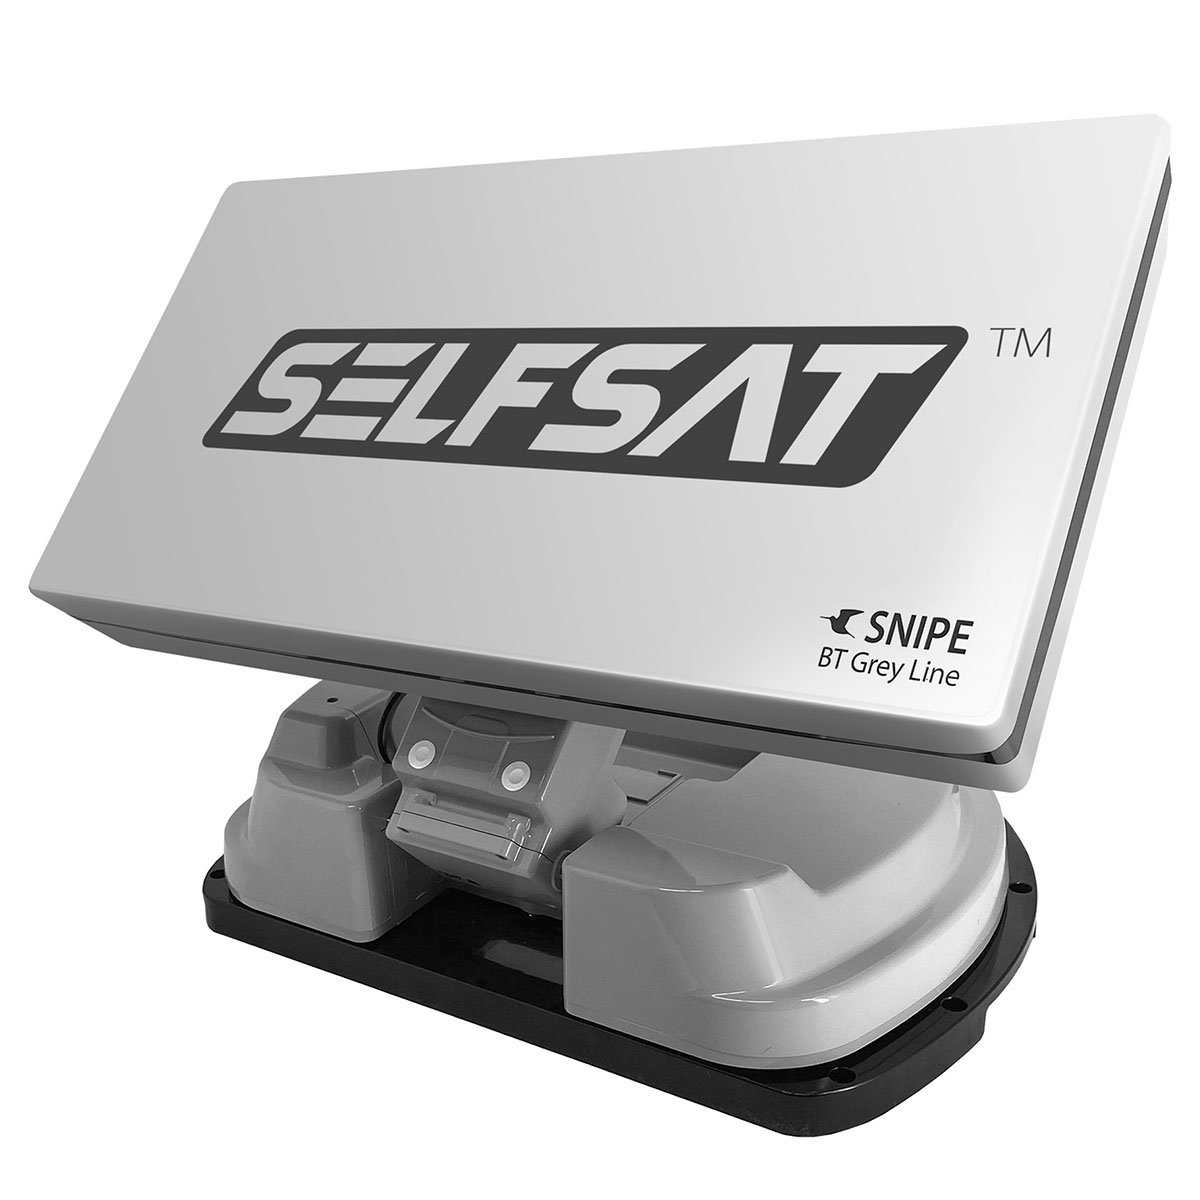 Twin Antenne Sat Grey Snipe automatische Line BT SELFSAT